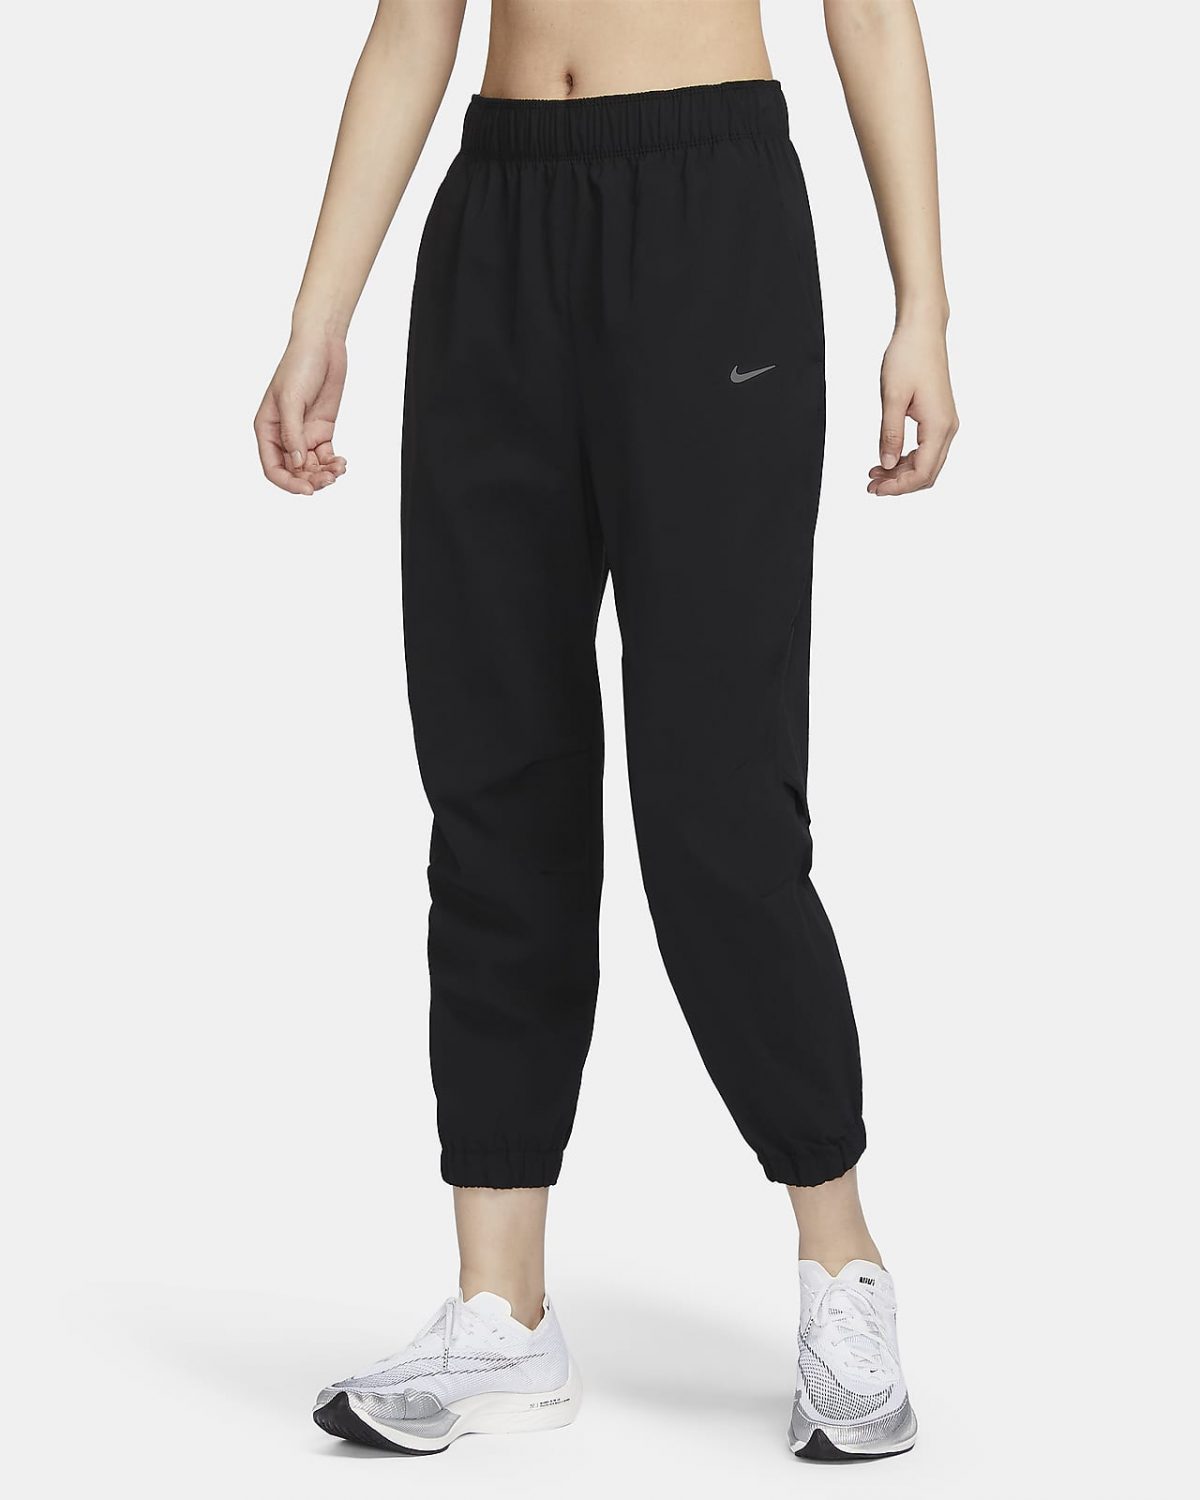 Женские брюки Nike Dri-FIT Fast фото